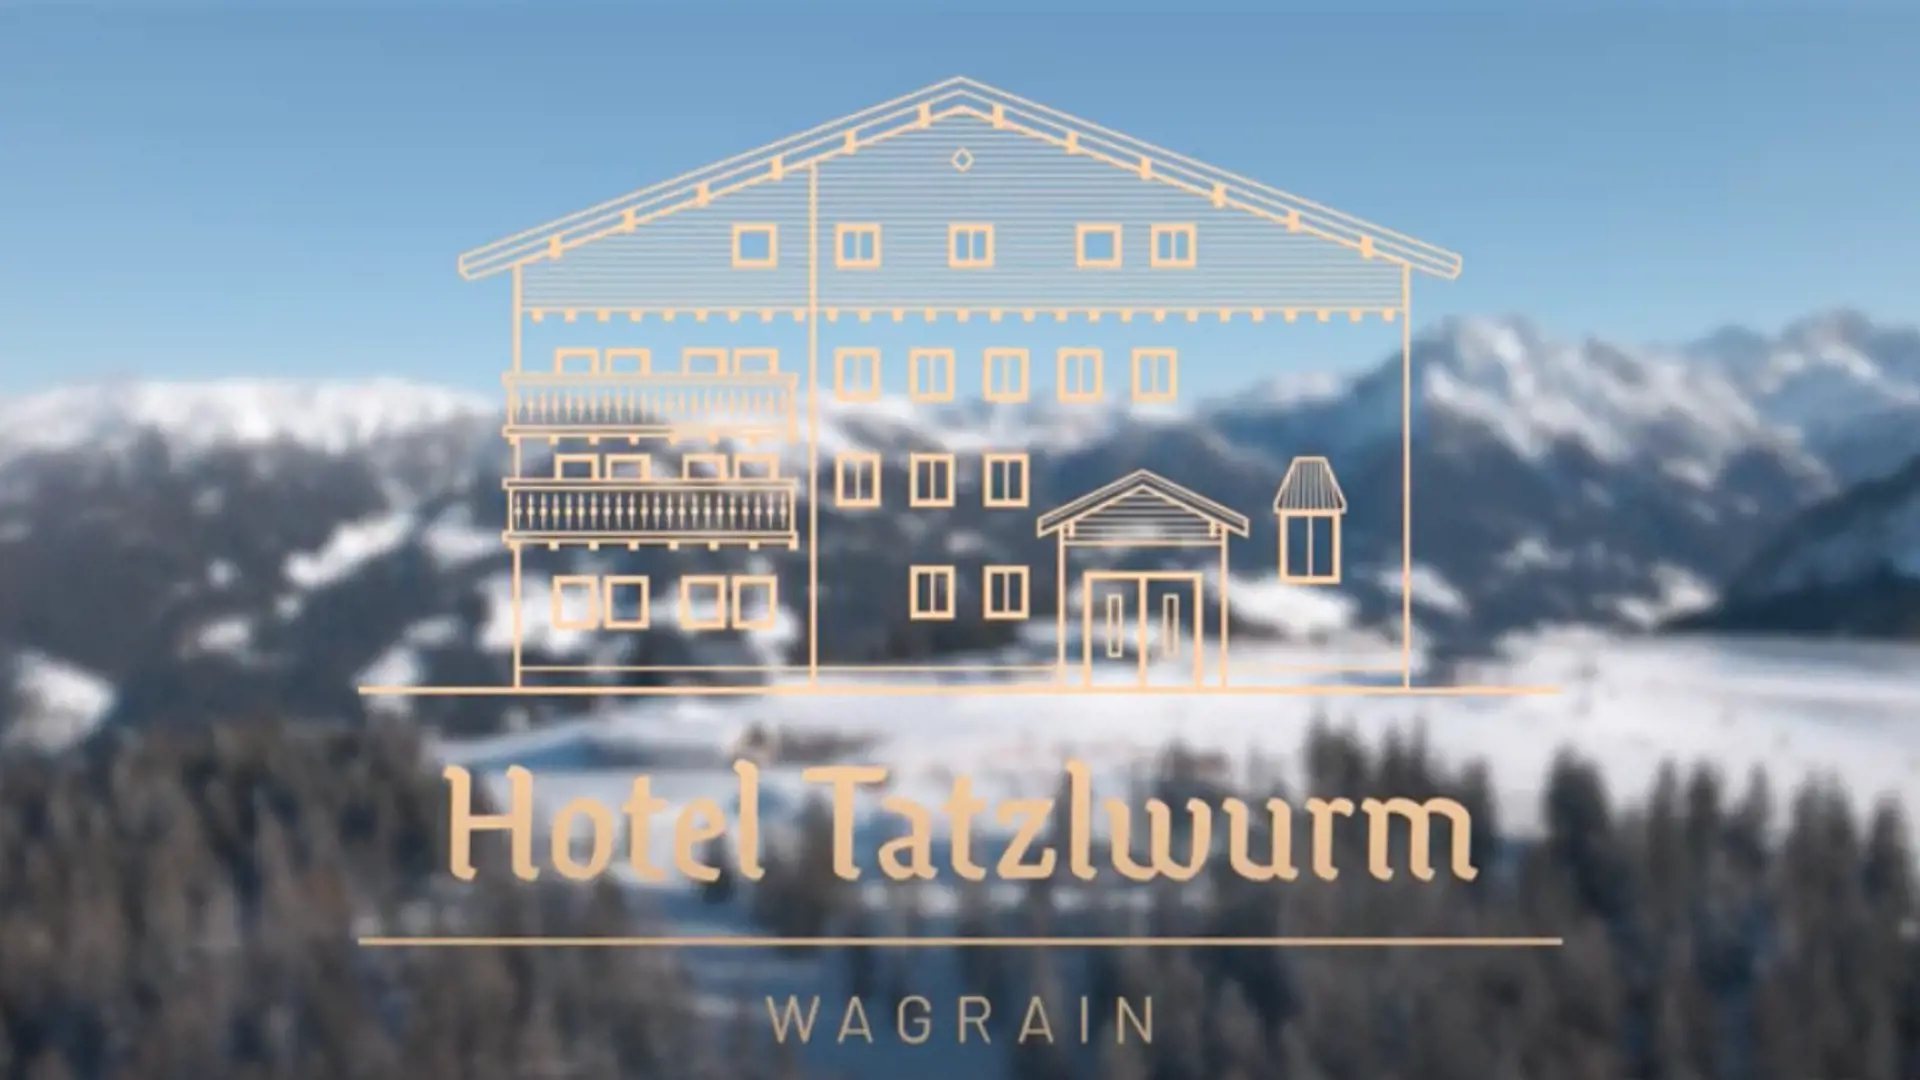 Hotel Tatzlwurm video LA